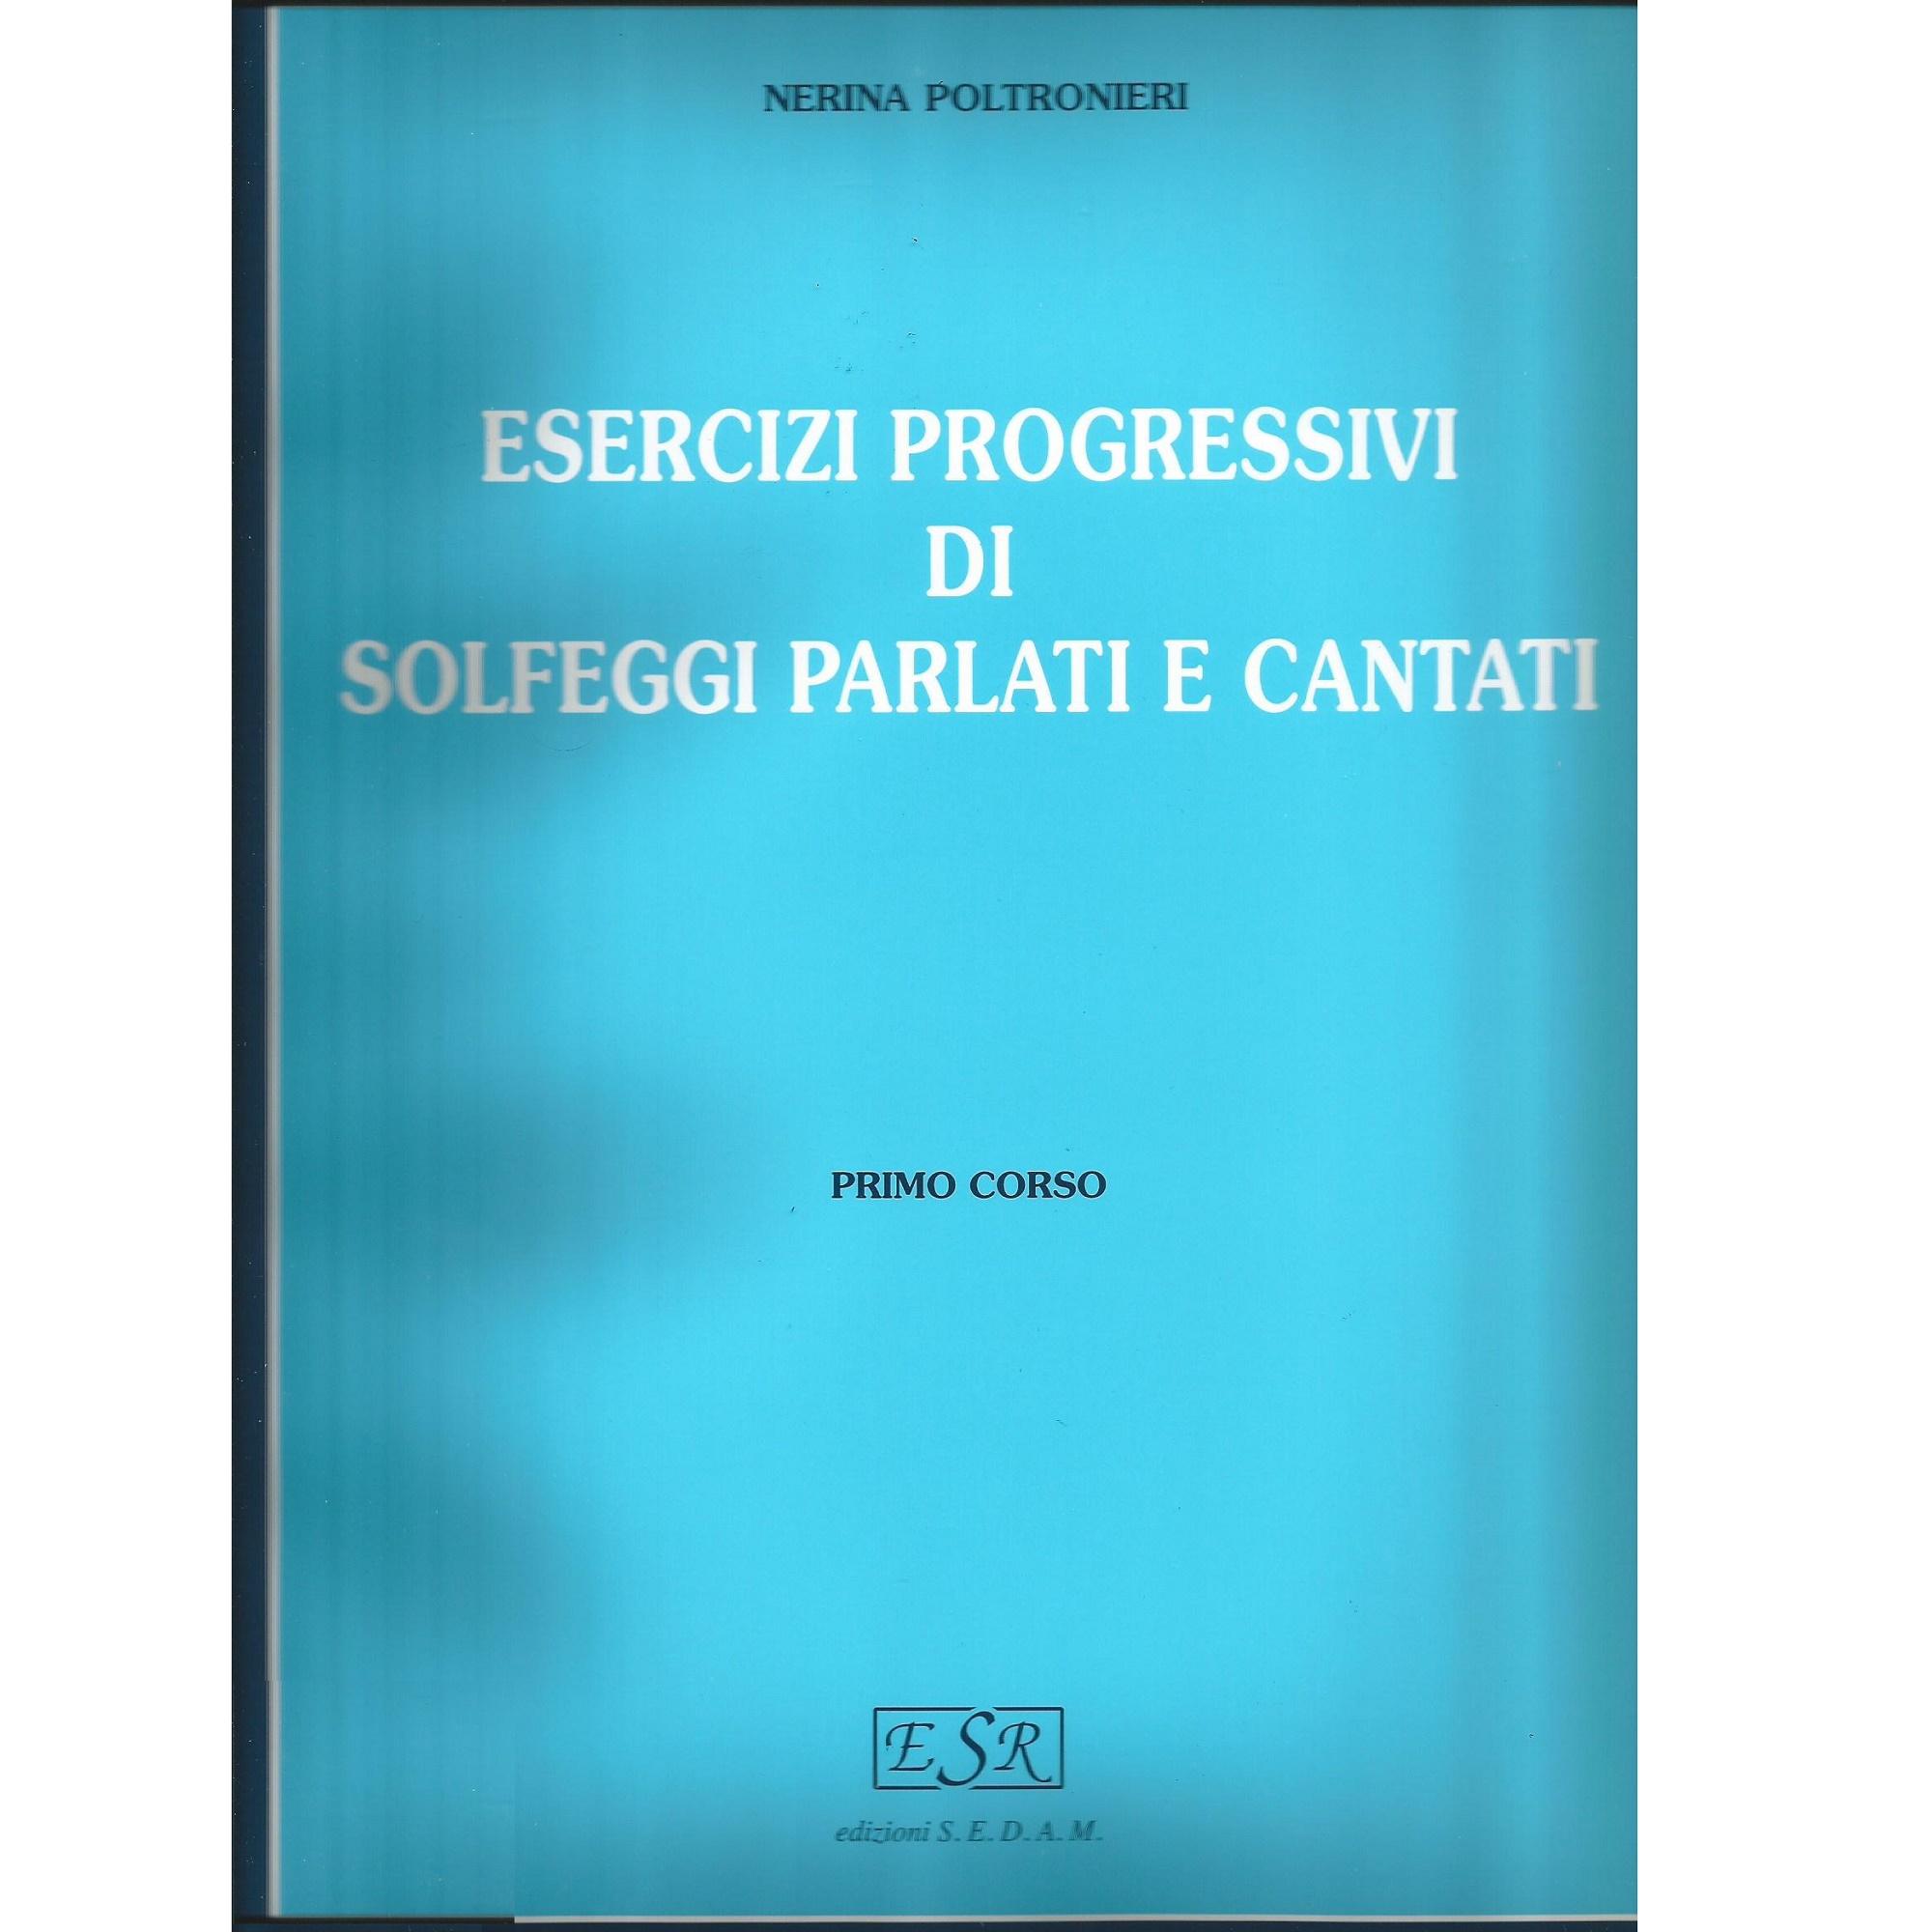 Poltronieri Esercizi progressivi di Solfeggi parlati e cantati PRIMO CORSO - Edizioni S.E.D.A.M. 